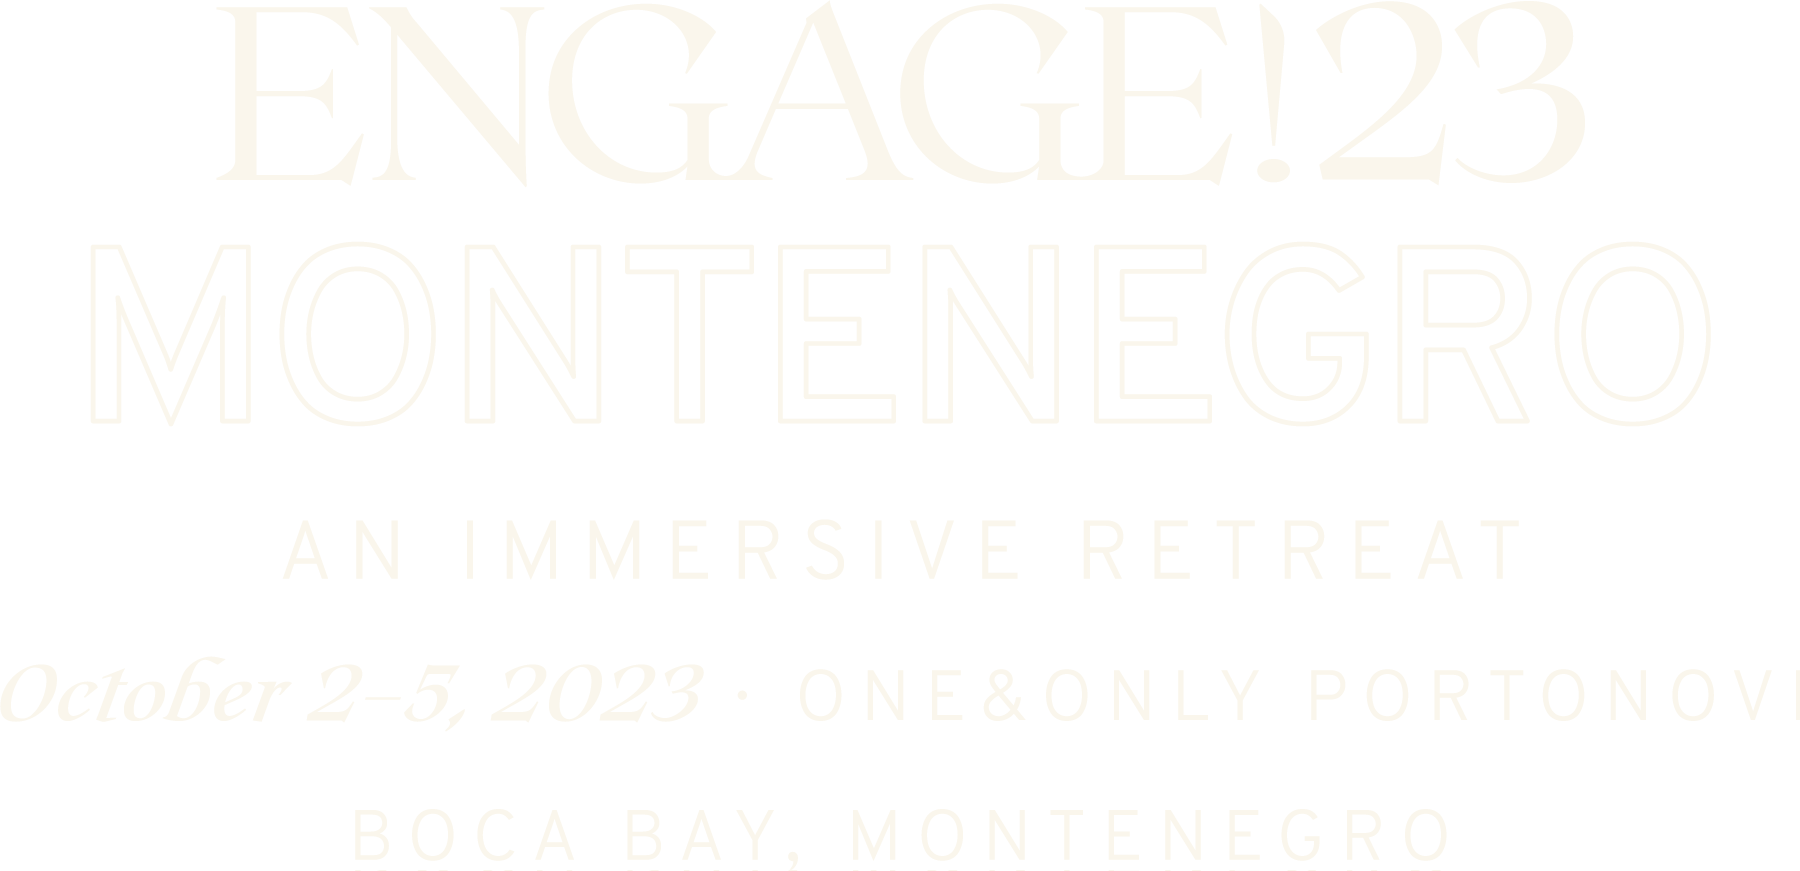 Engage!23 Montenegro logo